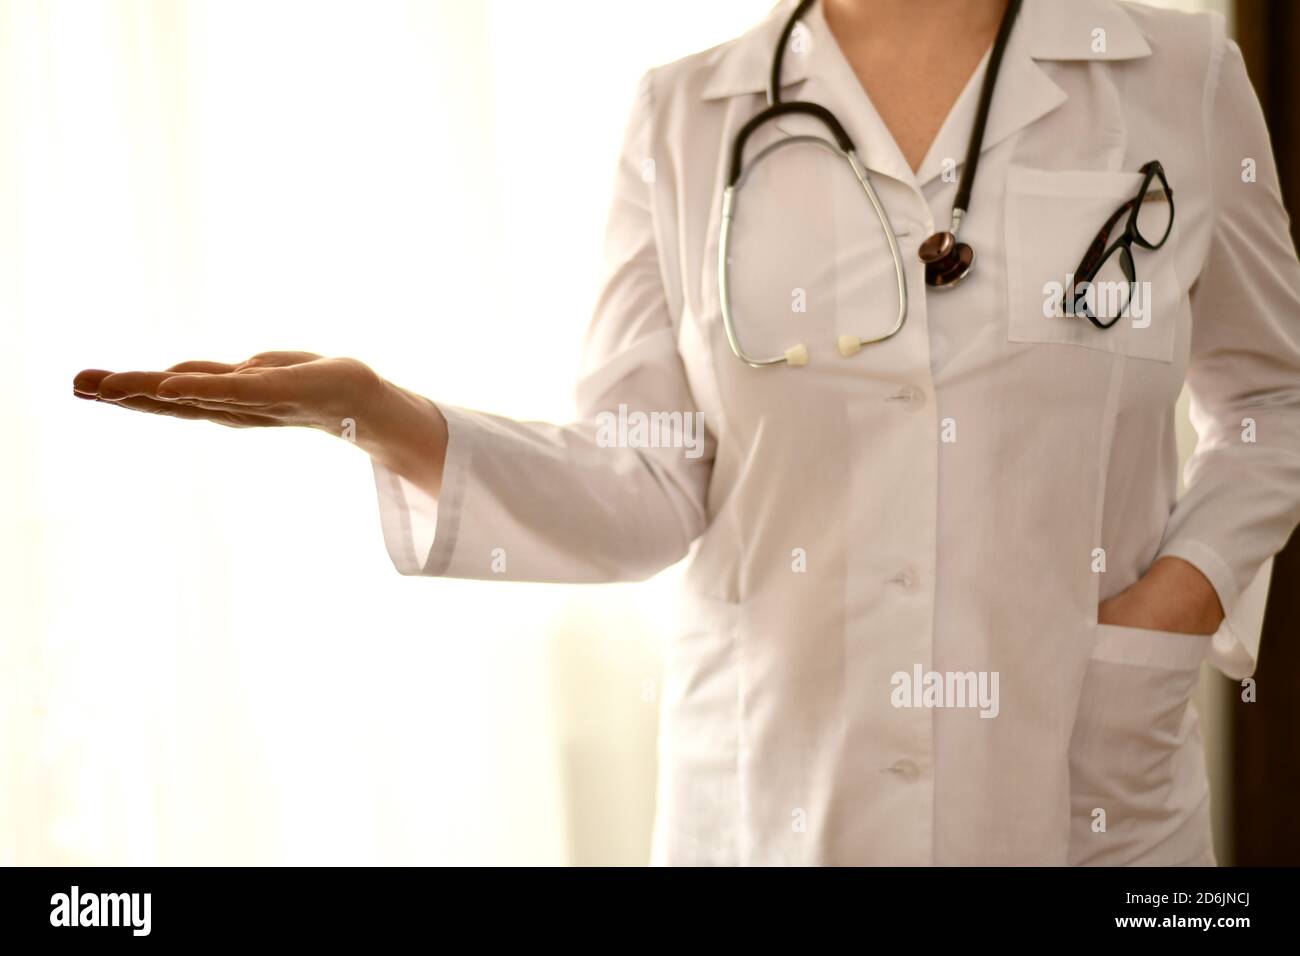 Der Arzt steht vorne, eine leere Handfläche ausgestreckt, die andere Hand in der Tasche einer weißen Robe. Stockfoto